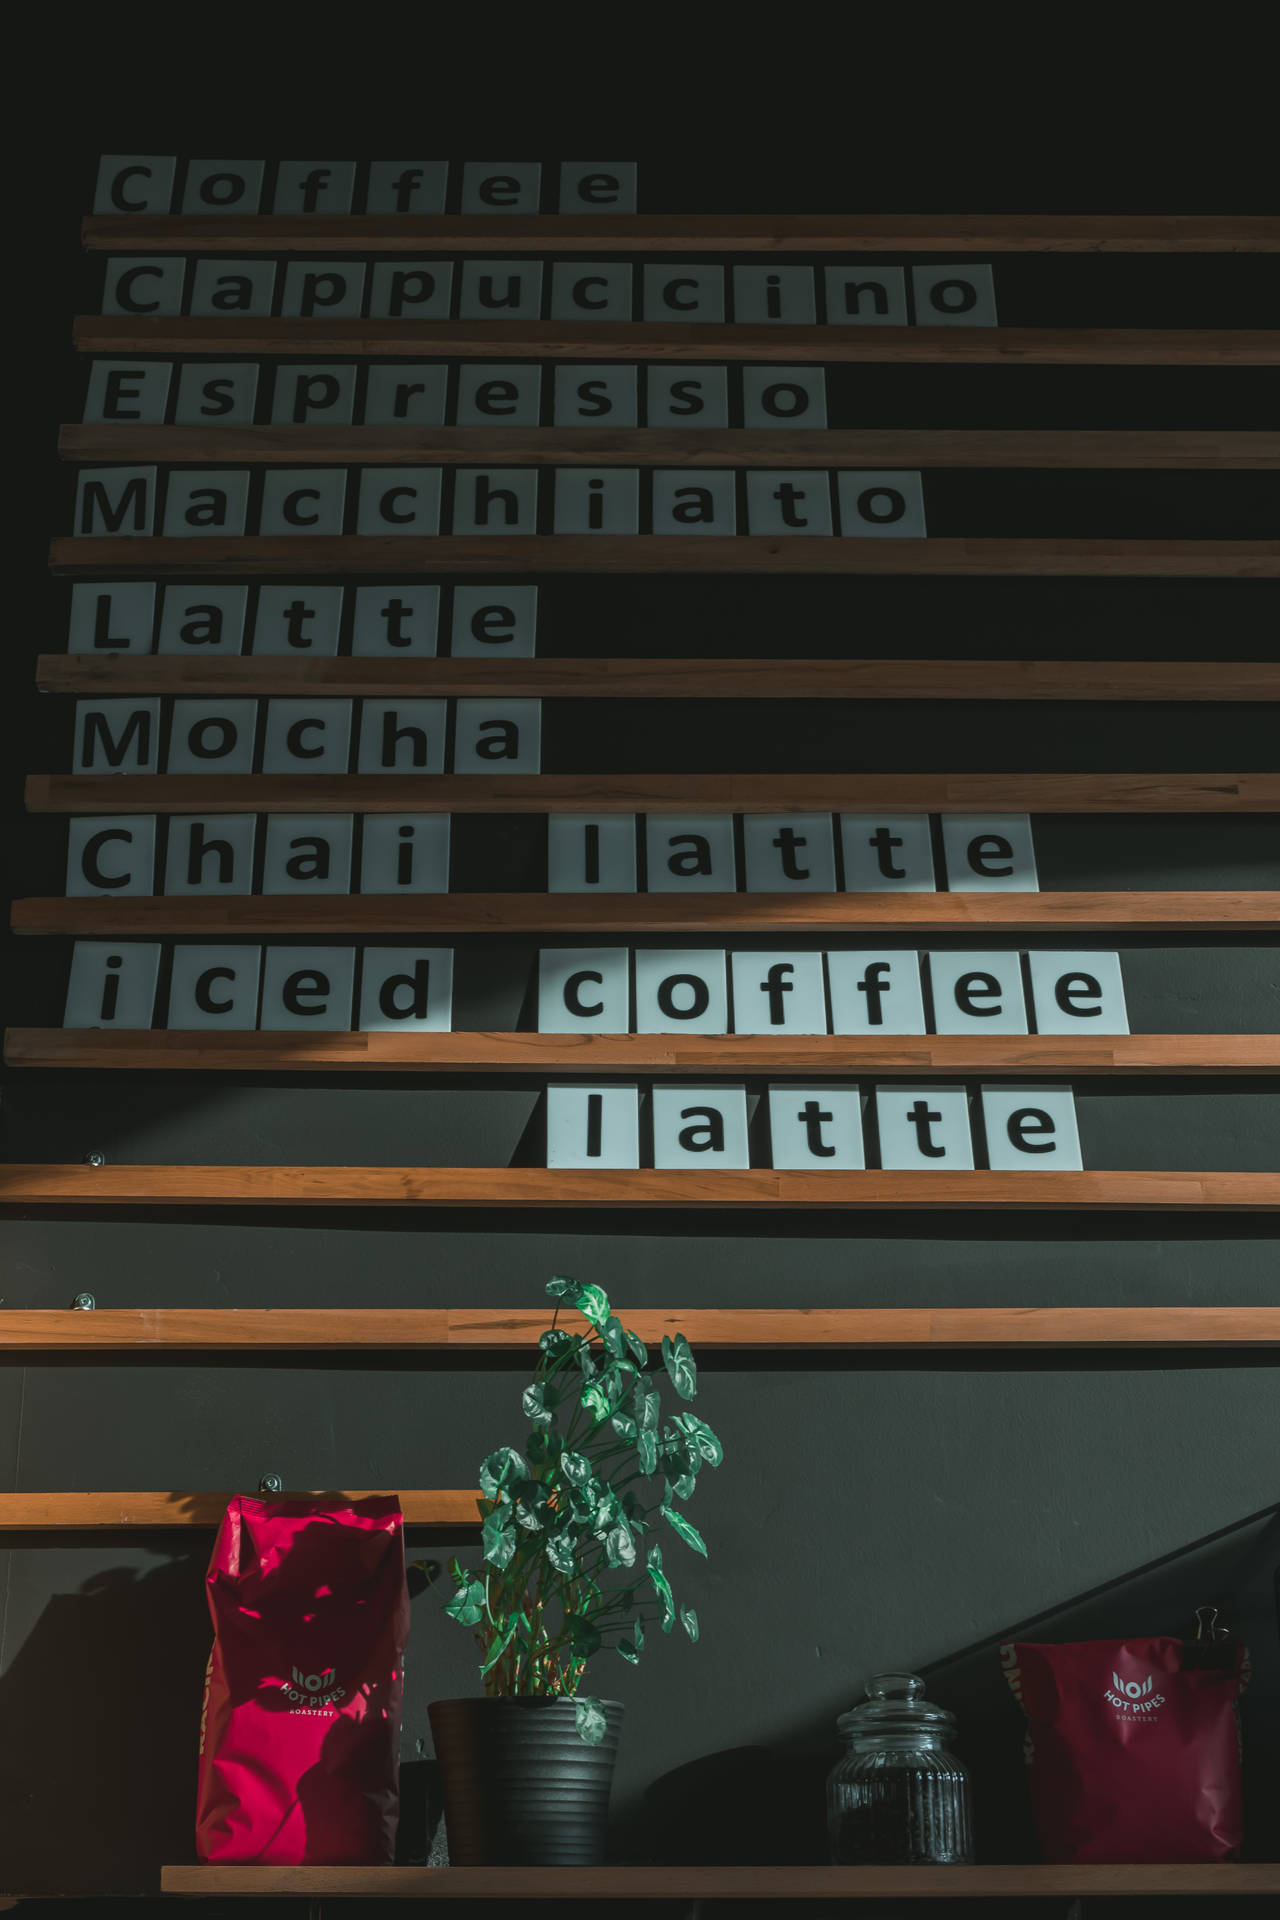 Kaffeehausmenü An Der Wand Wallpaper